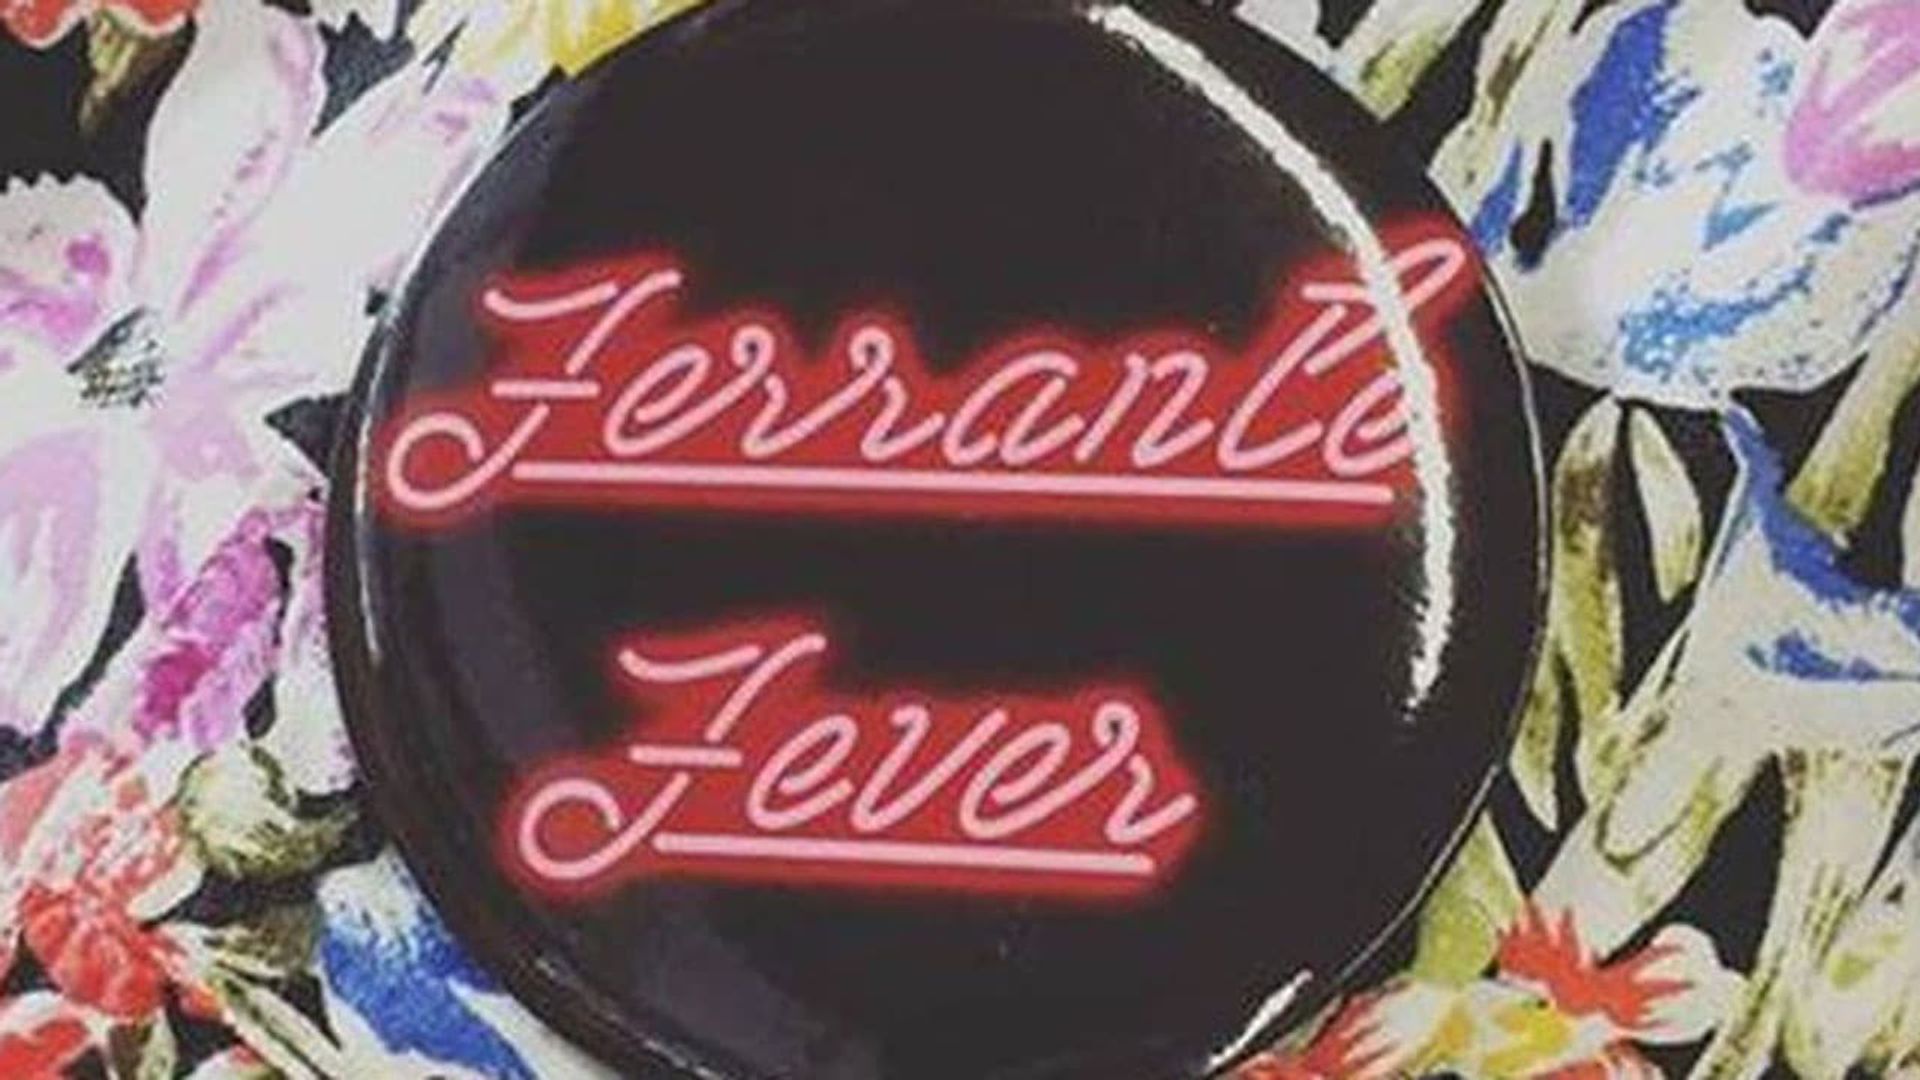 Ferrante Fever background